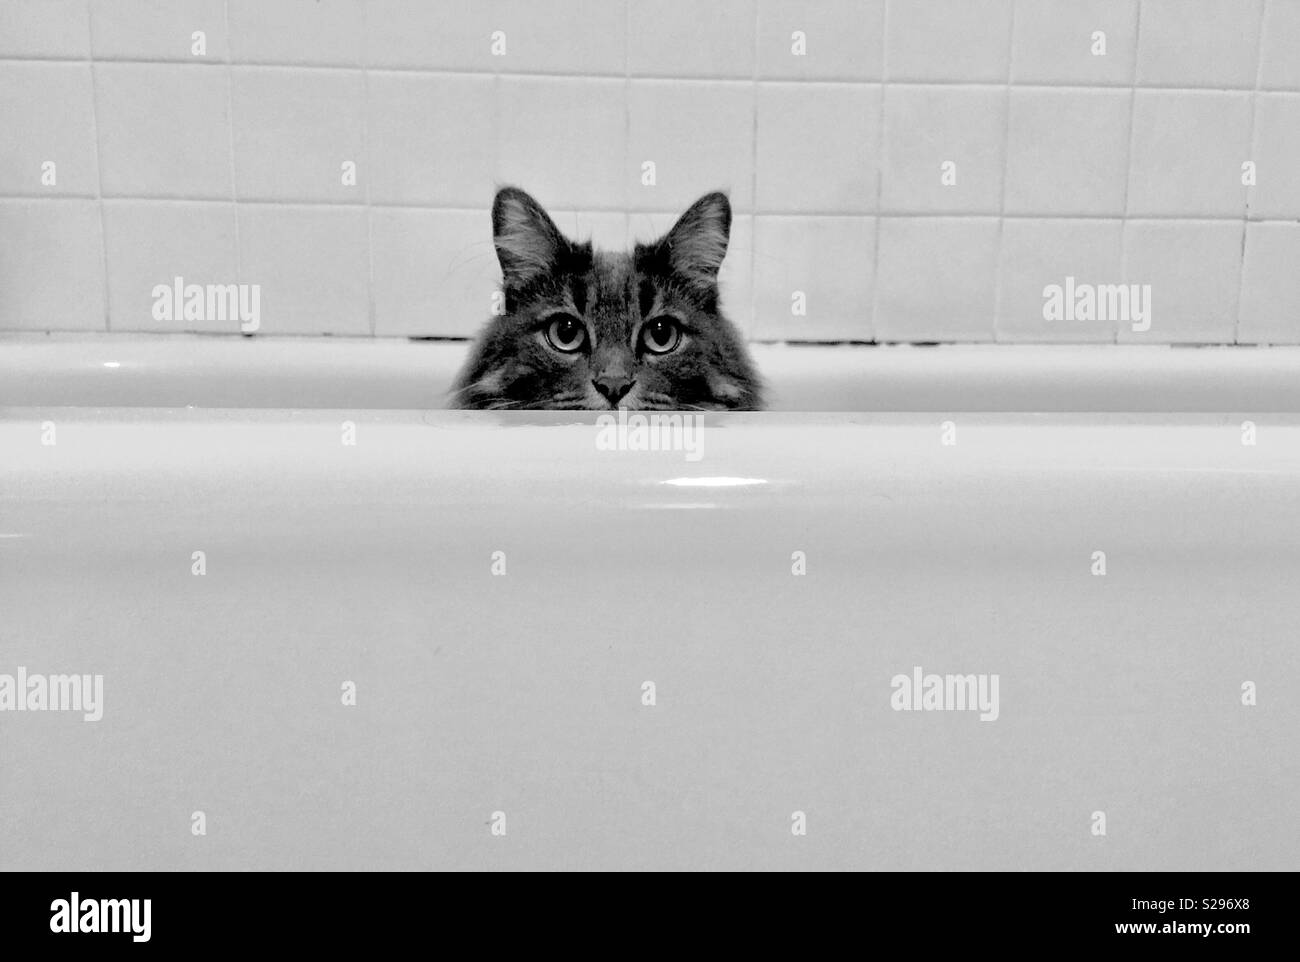 Chat dans une baignoire. Appareil photo tabby gris à poil long face à un chat dans une baignoire en porcelaine blanche et un mur de carrelage blanc de salle de bains derrière. Banque D'Images